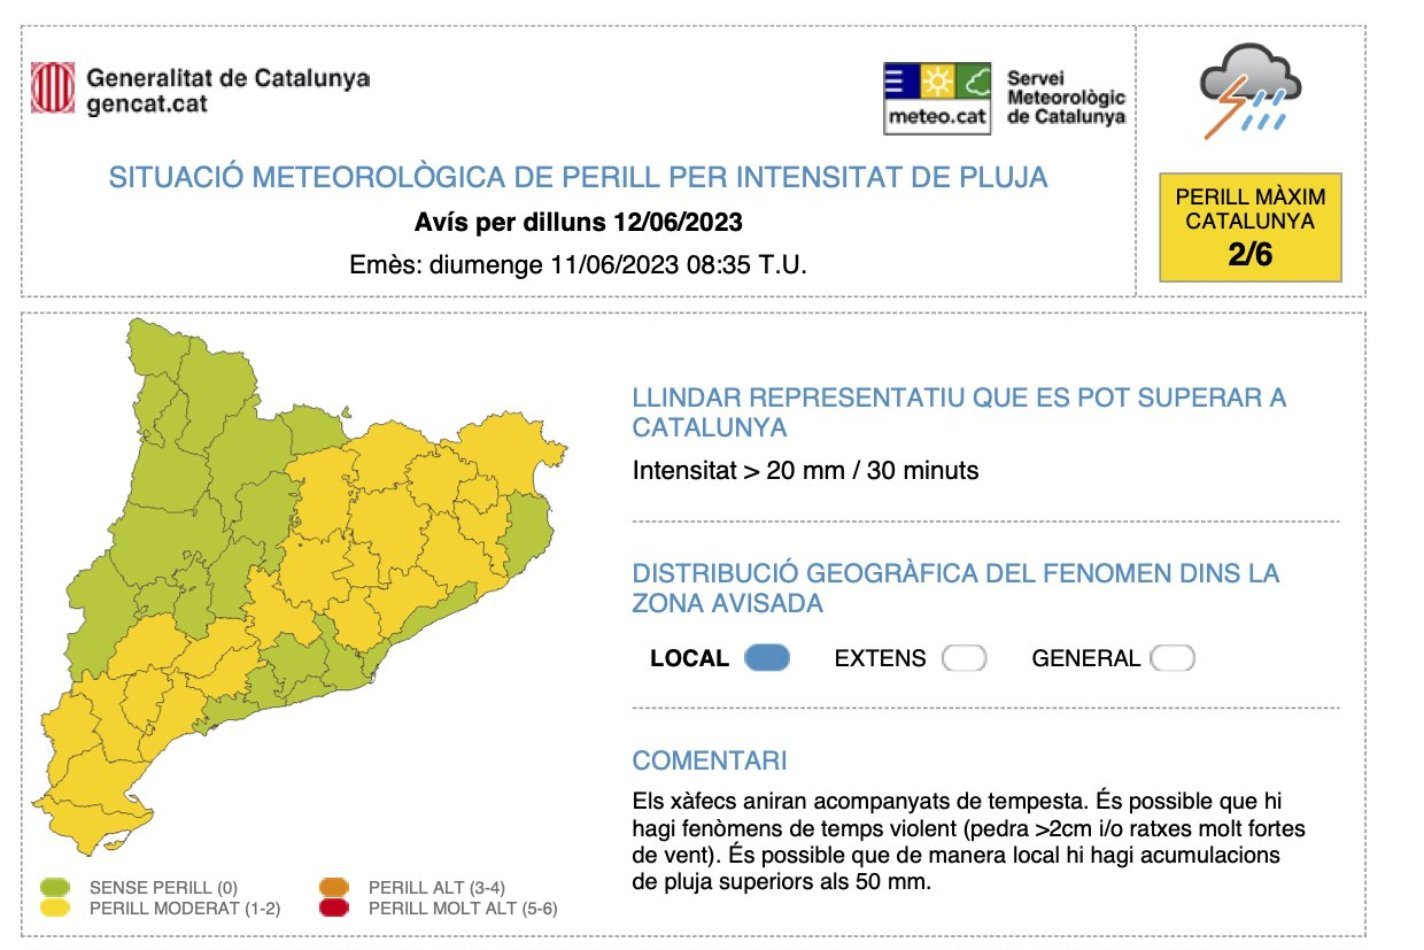 Més de la meitat de les comarques catalanes tenen avís per intensitat de pluja el primer dia de la setmana / Servei Meteorològic de Catalunya